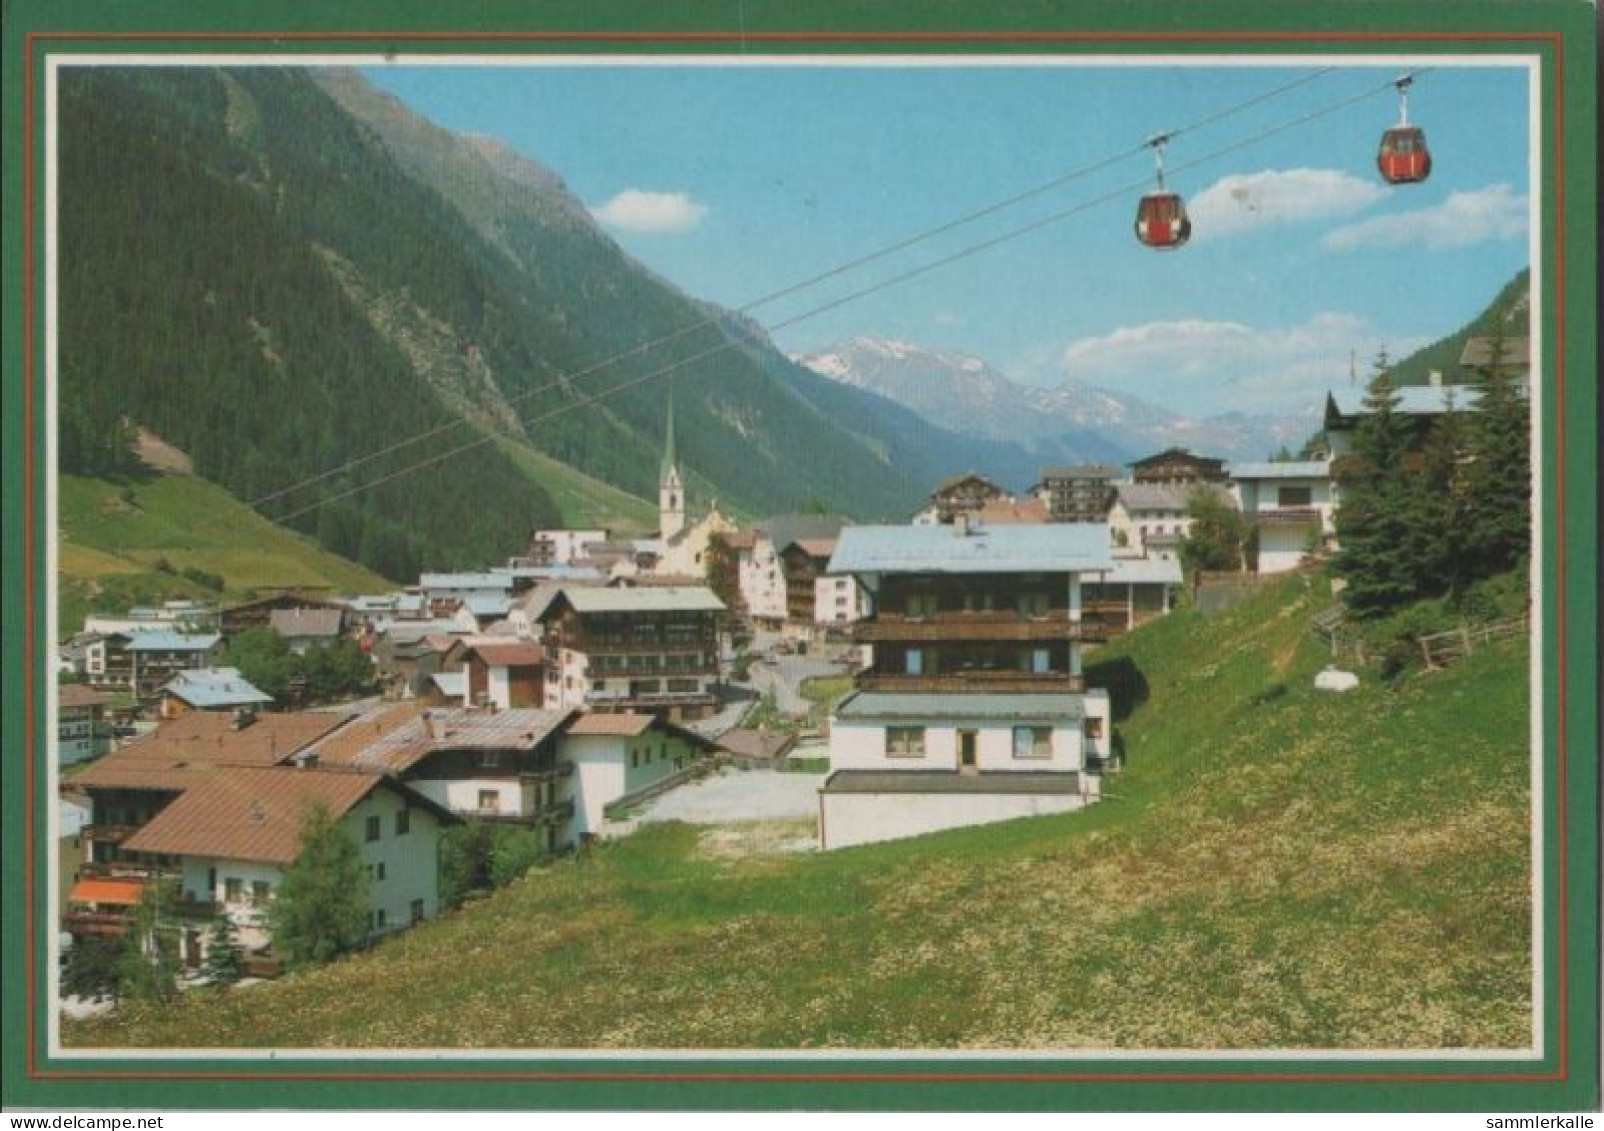 39112 - Österreich - Ischgl - Paznauntal - 1993 - Ischgl